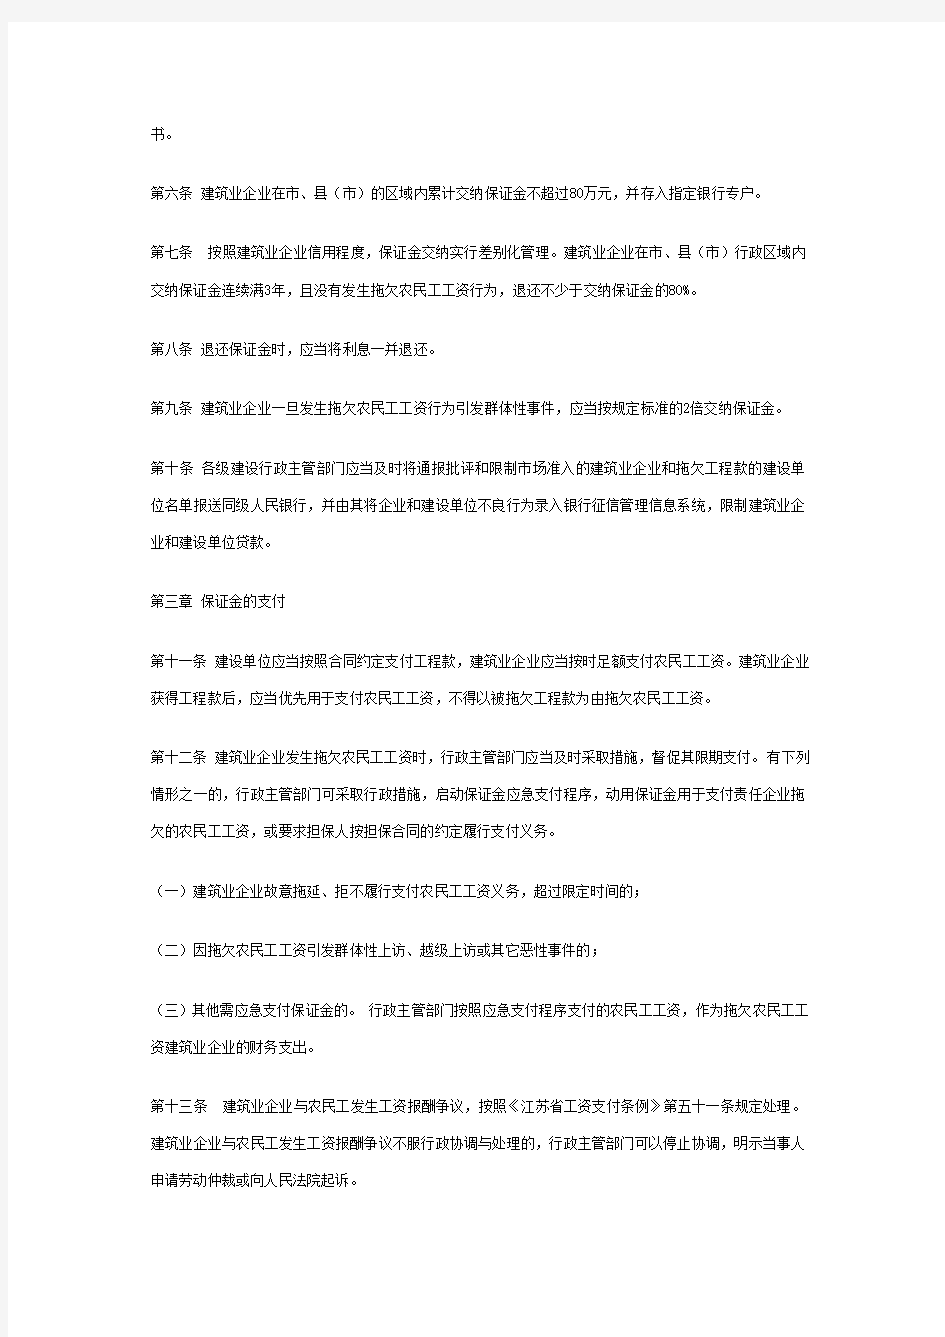 江苏省建设领域农民工工资保证金实施办法